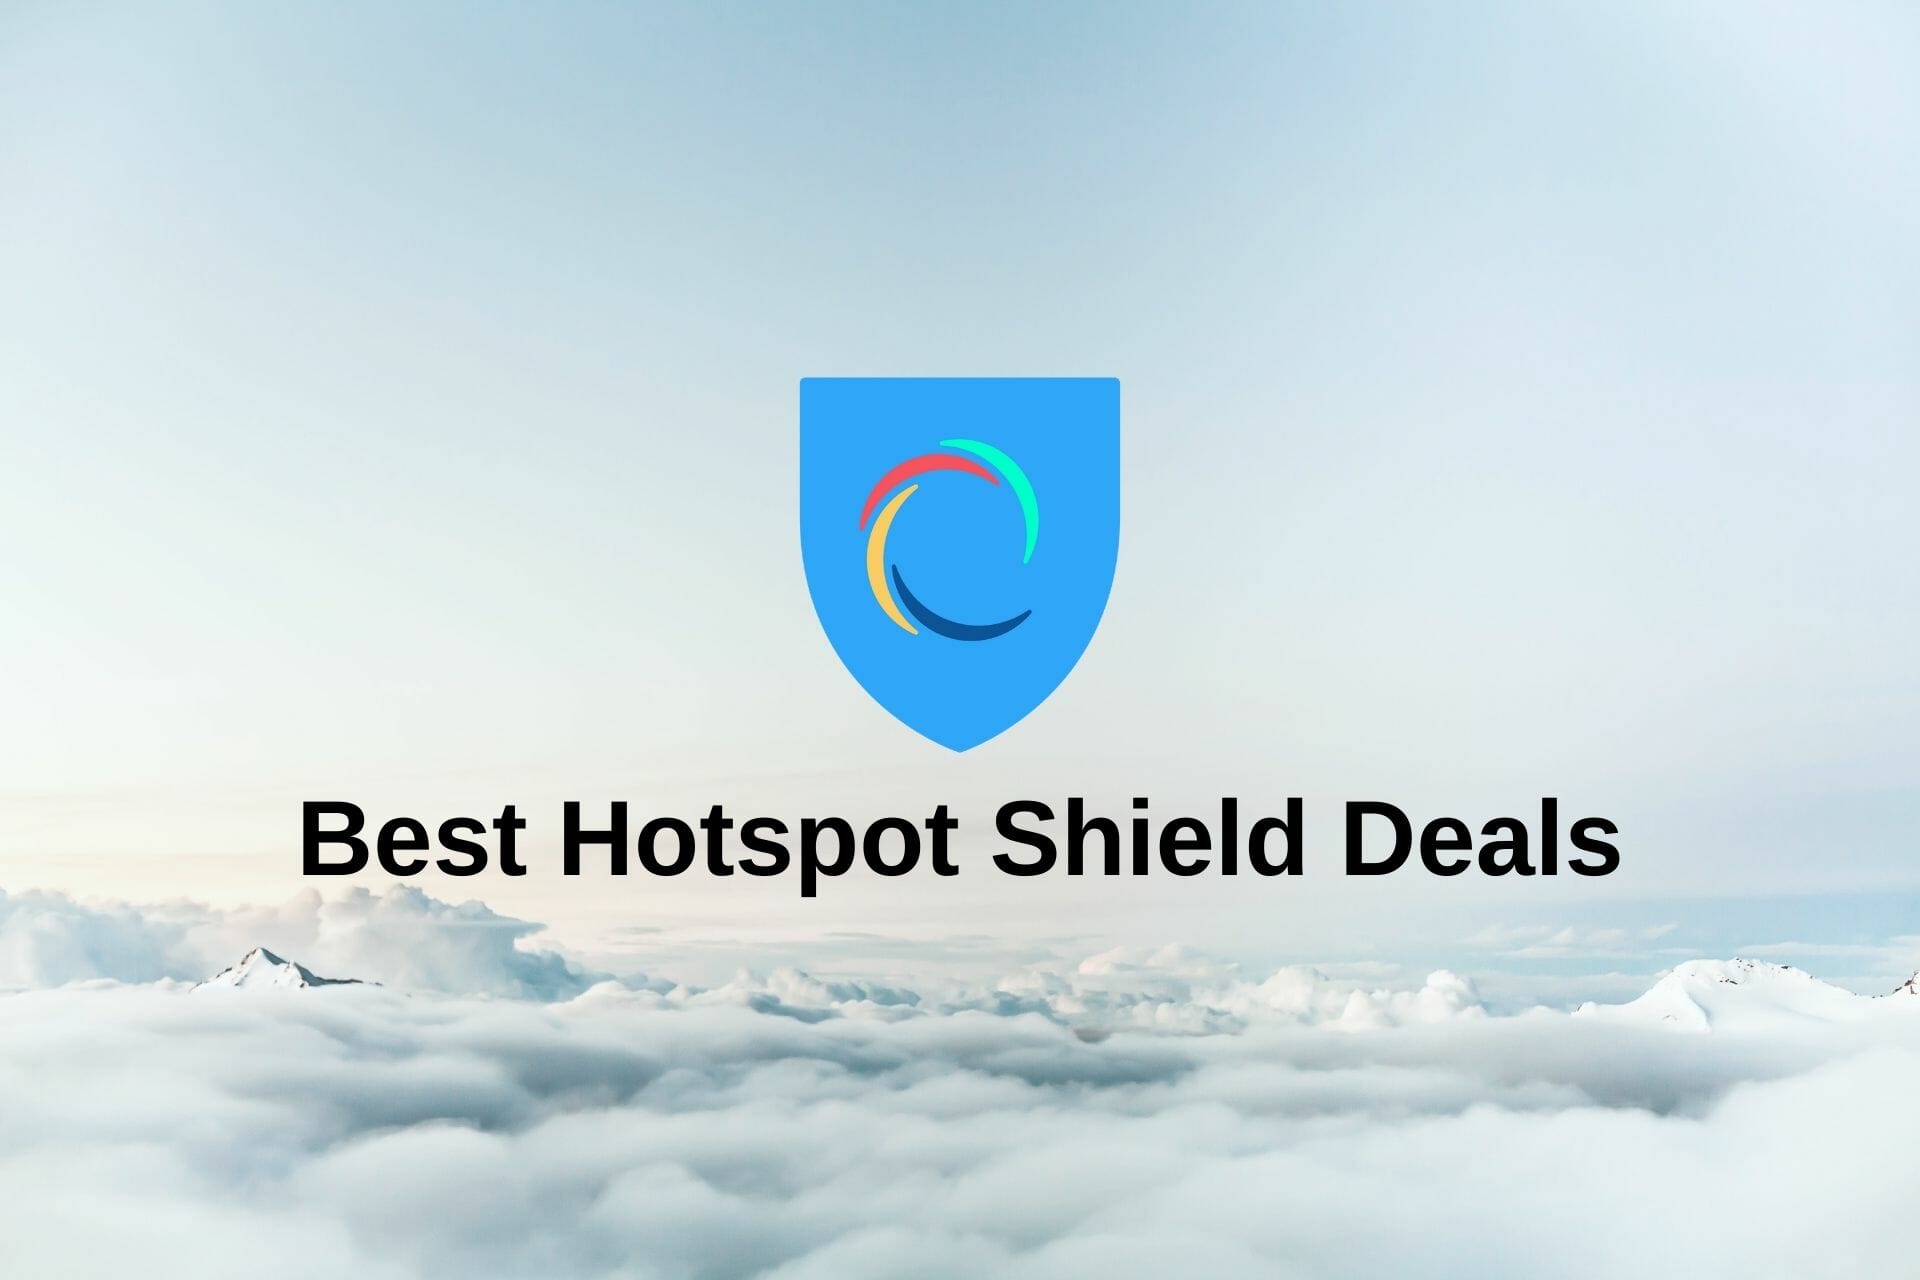 Hotspot Shield Deals